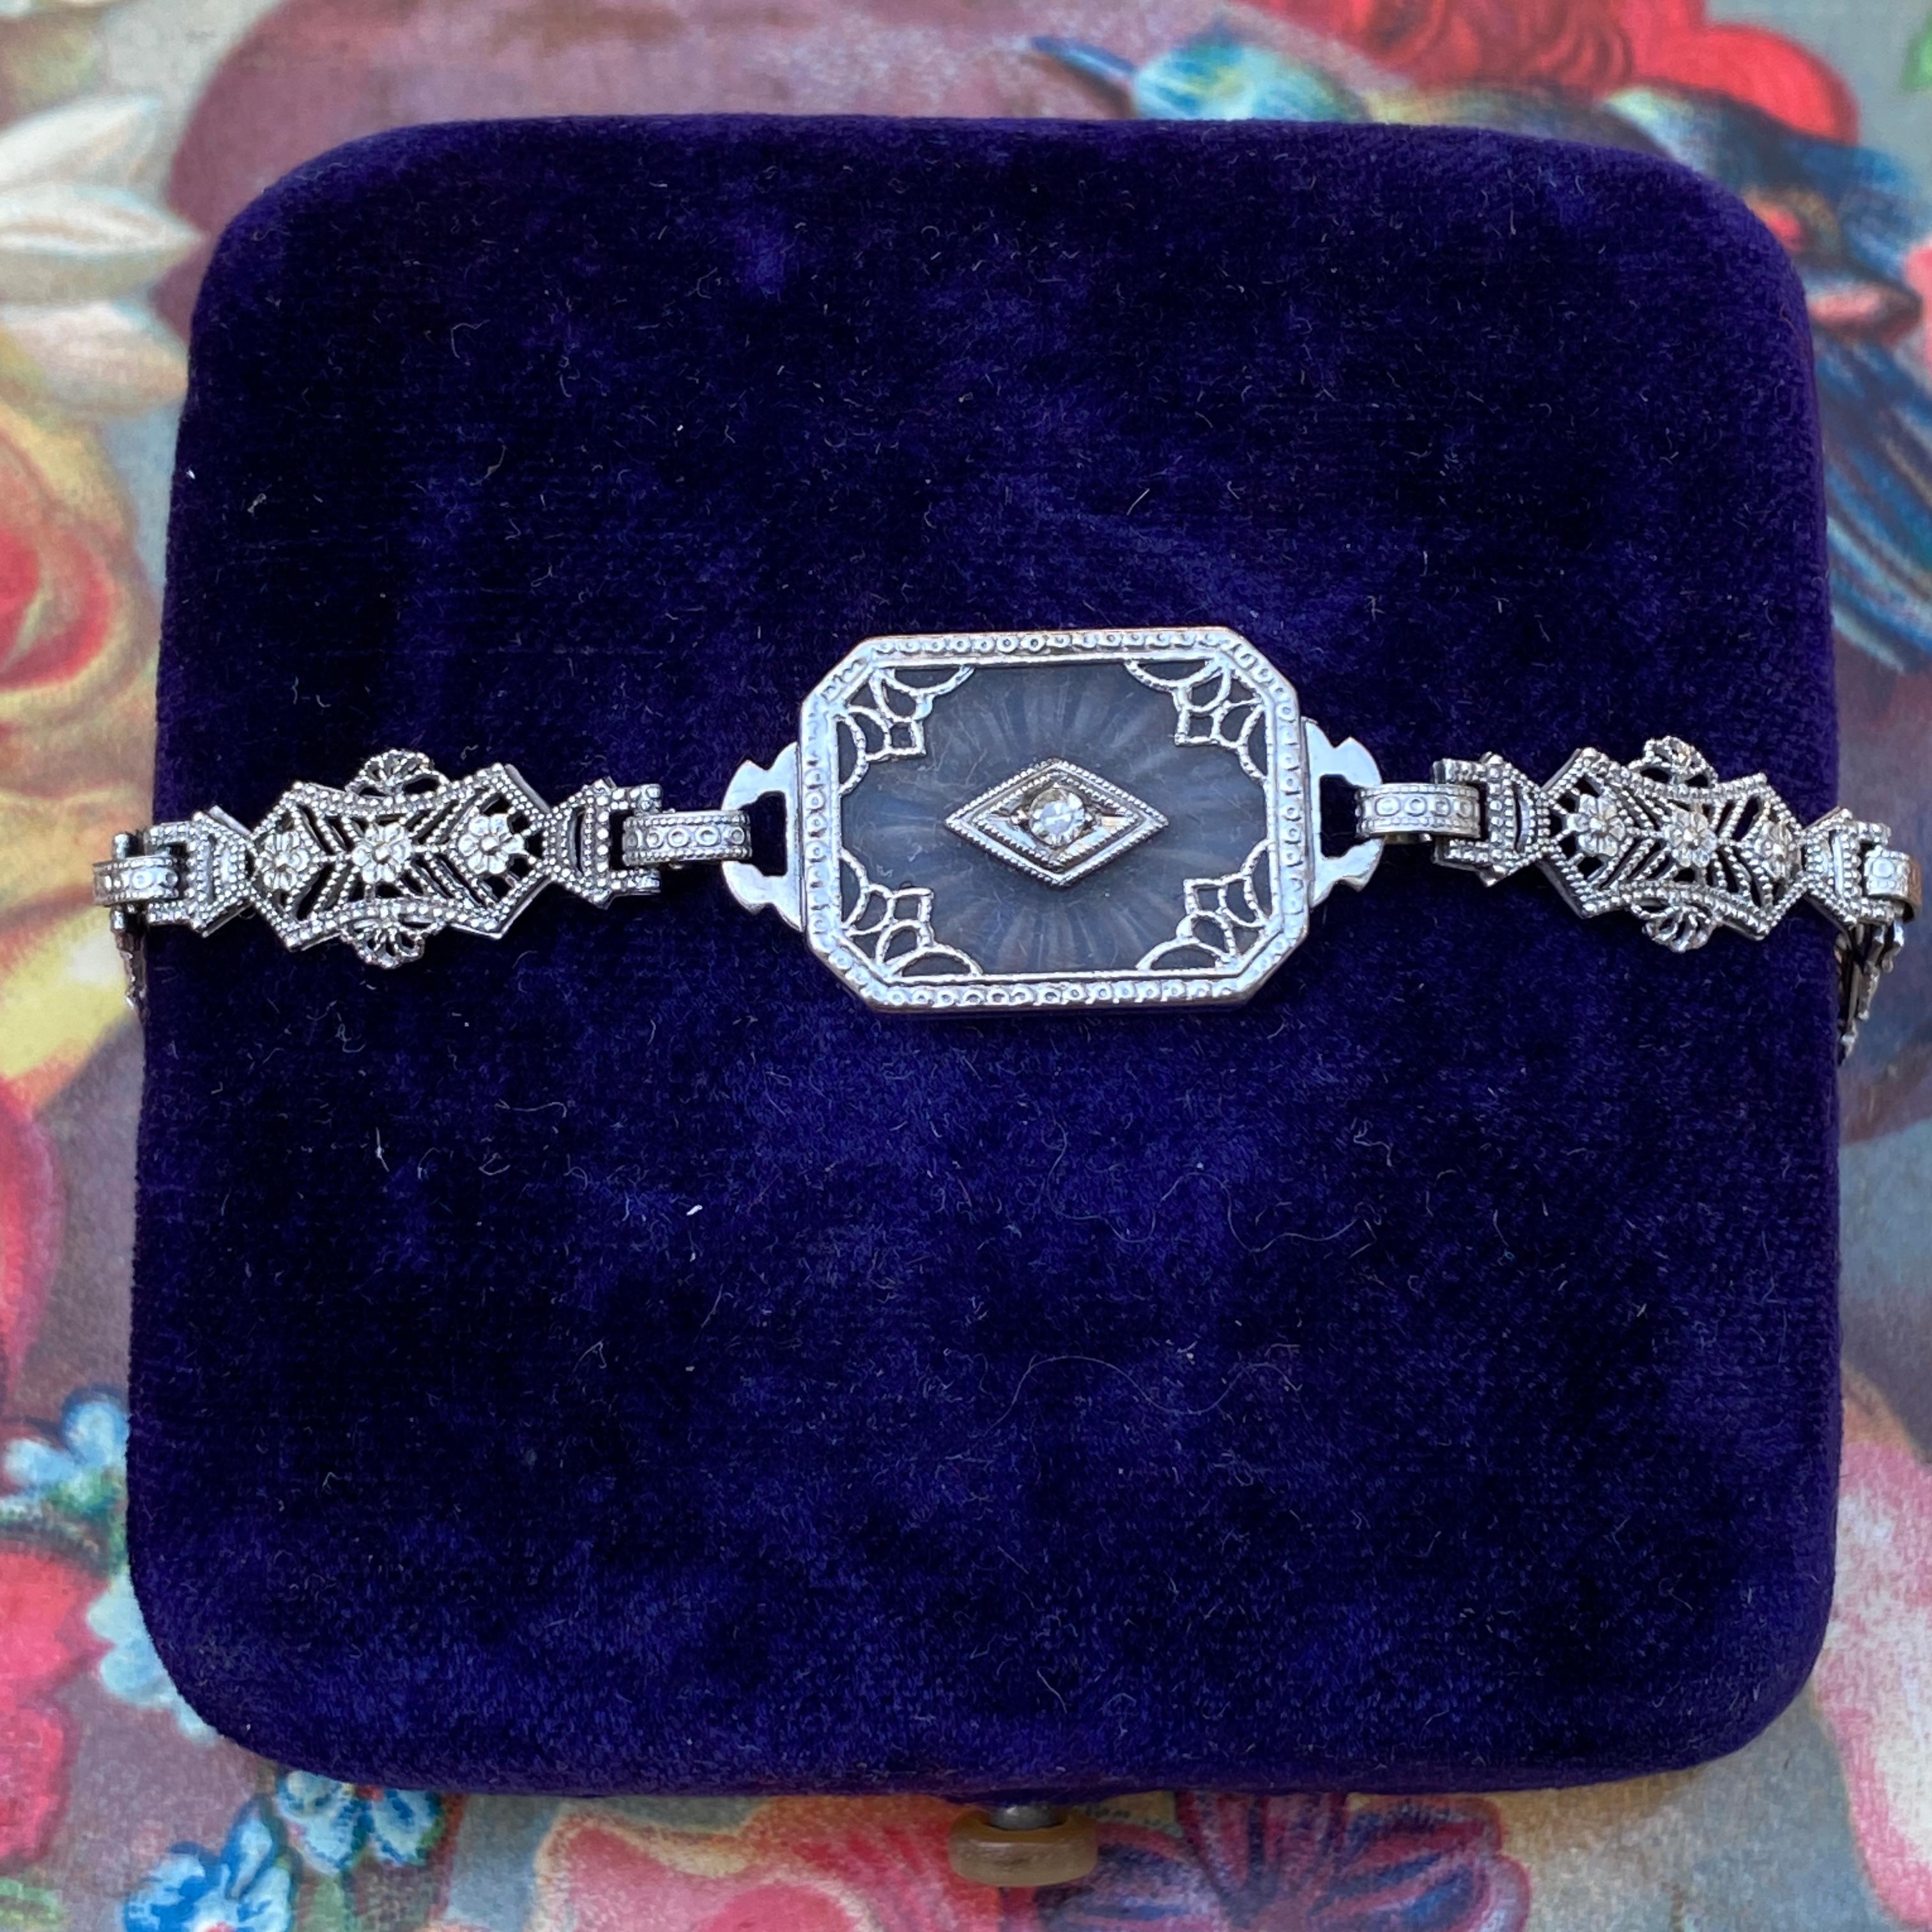 Détails :
Magnifique et délicat bracelet Art déco en cristal de roche sculpté filigrané en or blanc 10K des années 1920 avec diamant. Le diamant est rond de 2 mm. Le cristal de roche, souvent utilisé pendant la période Art déco, est dépoli d'un côté